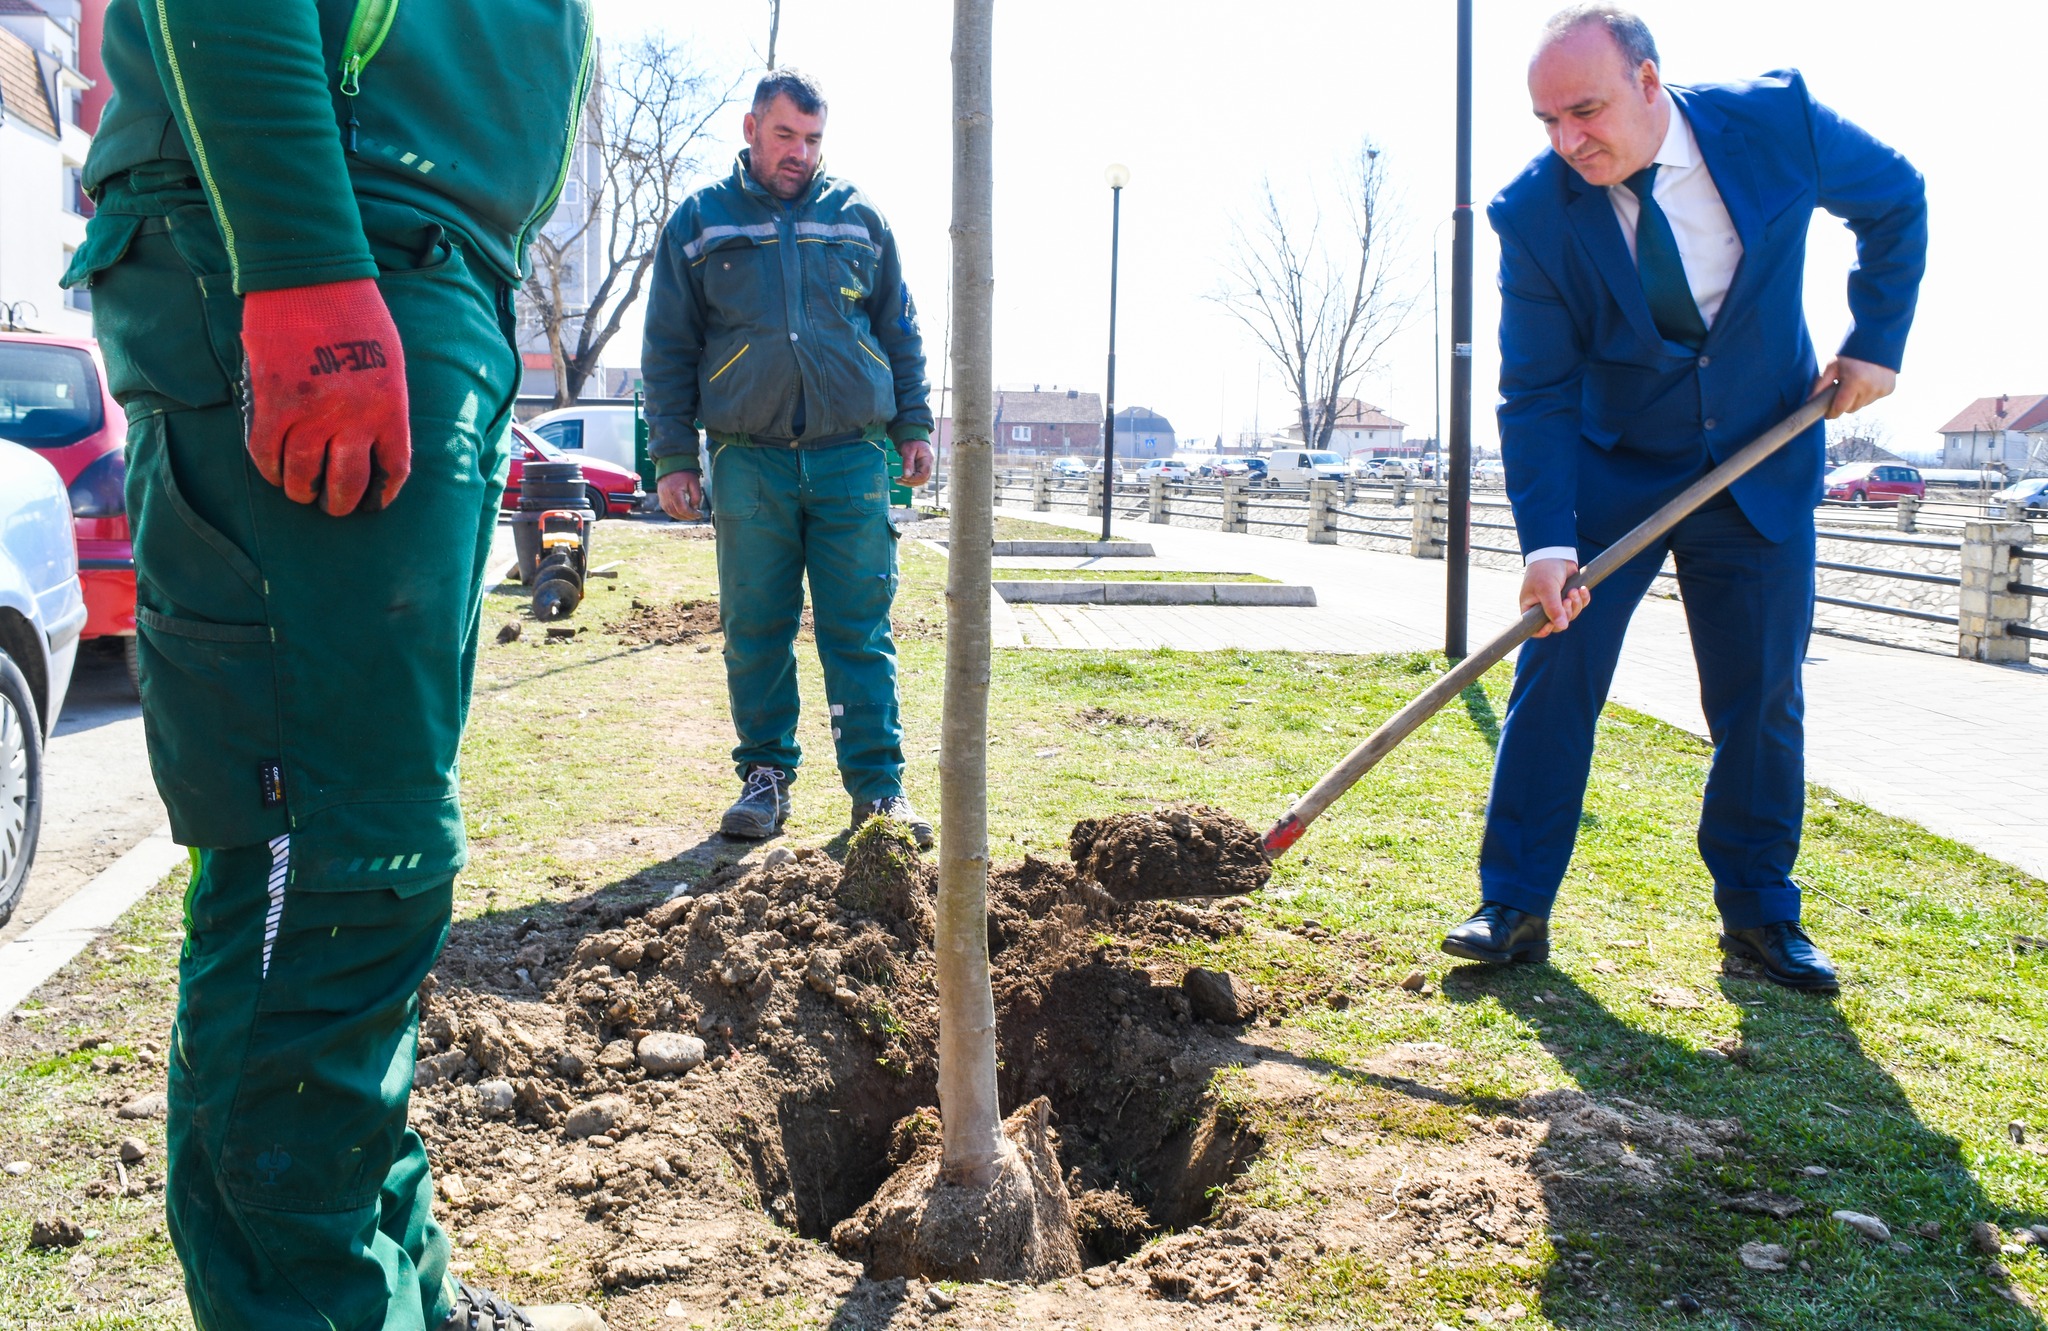  Mbjellen drunj në Ditën e Pranverës në Podujevë